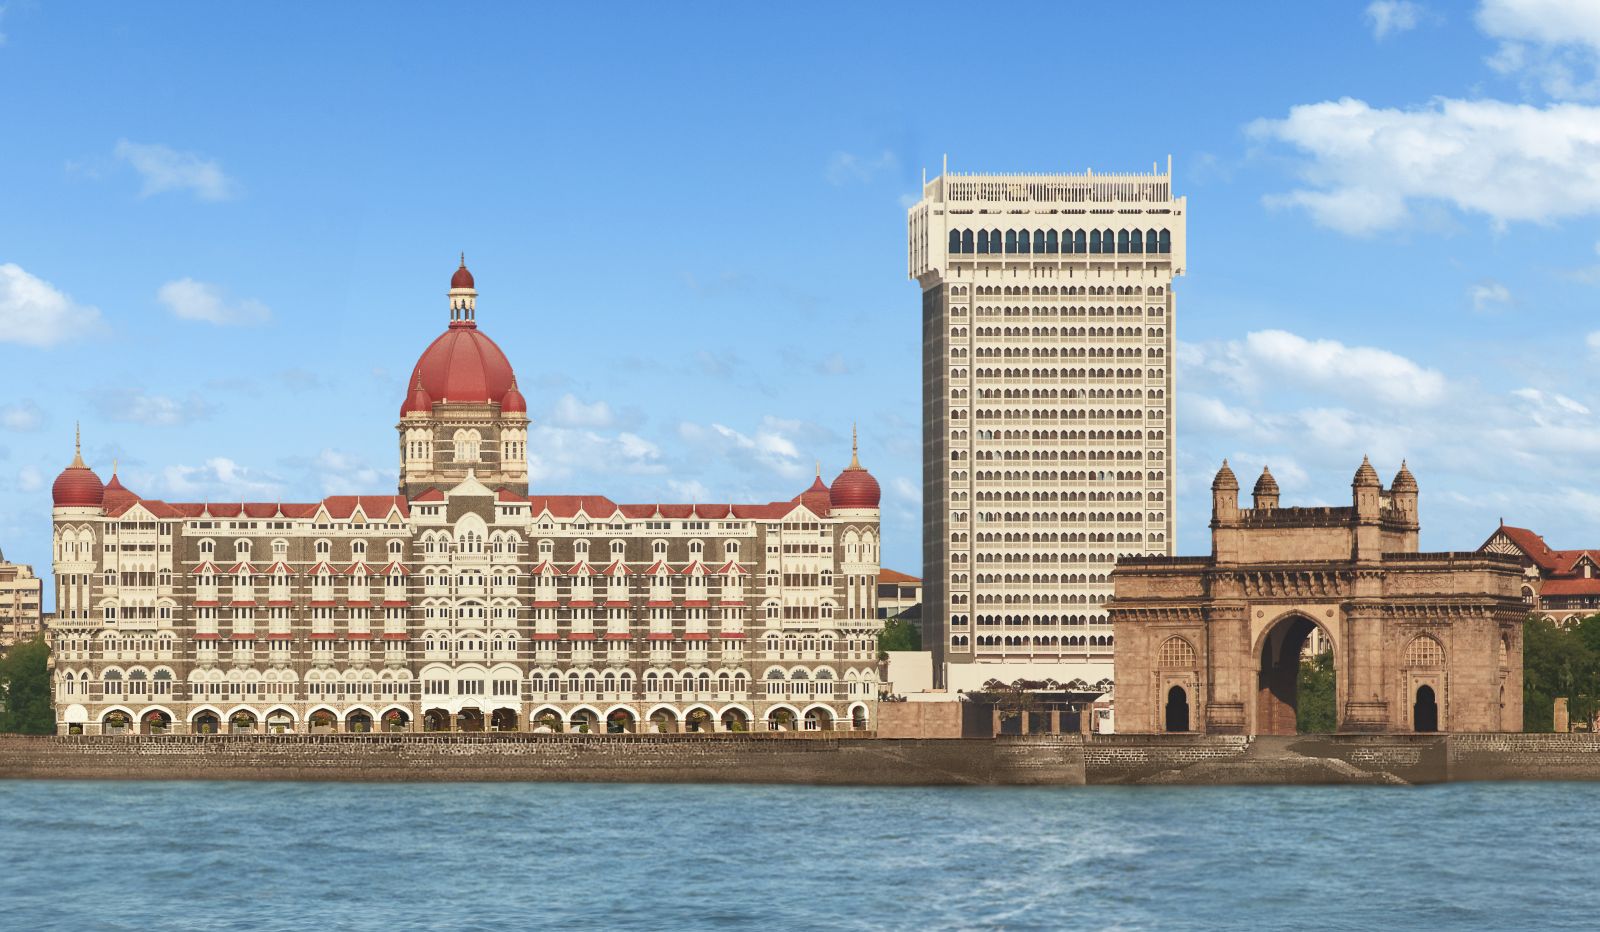 View of the Taj Mahal Palace hotel in Mumbai